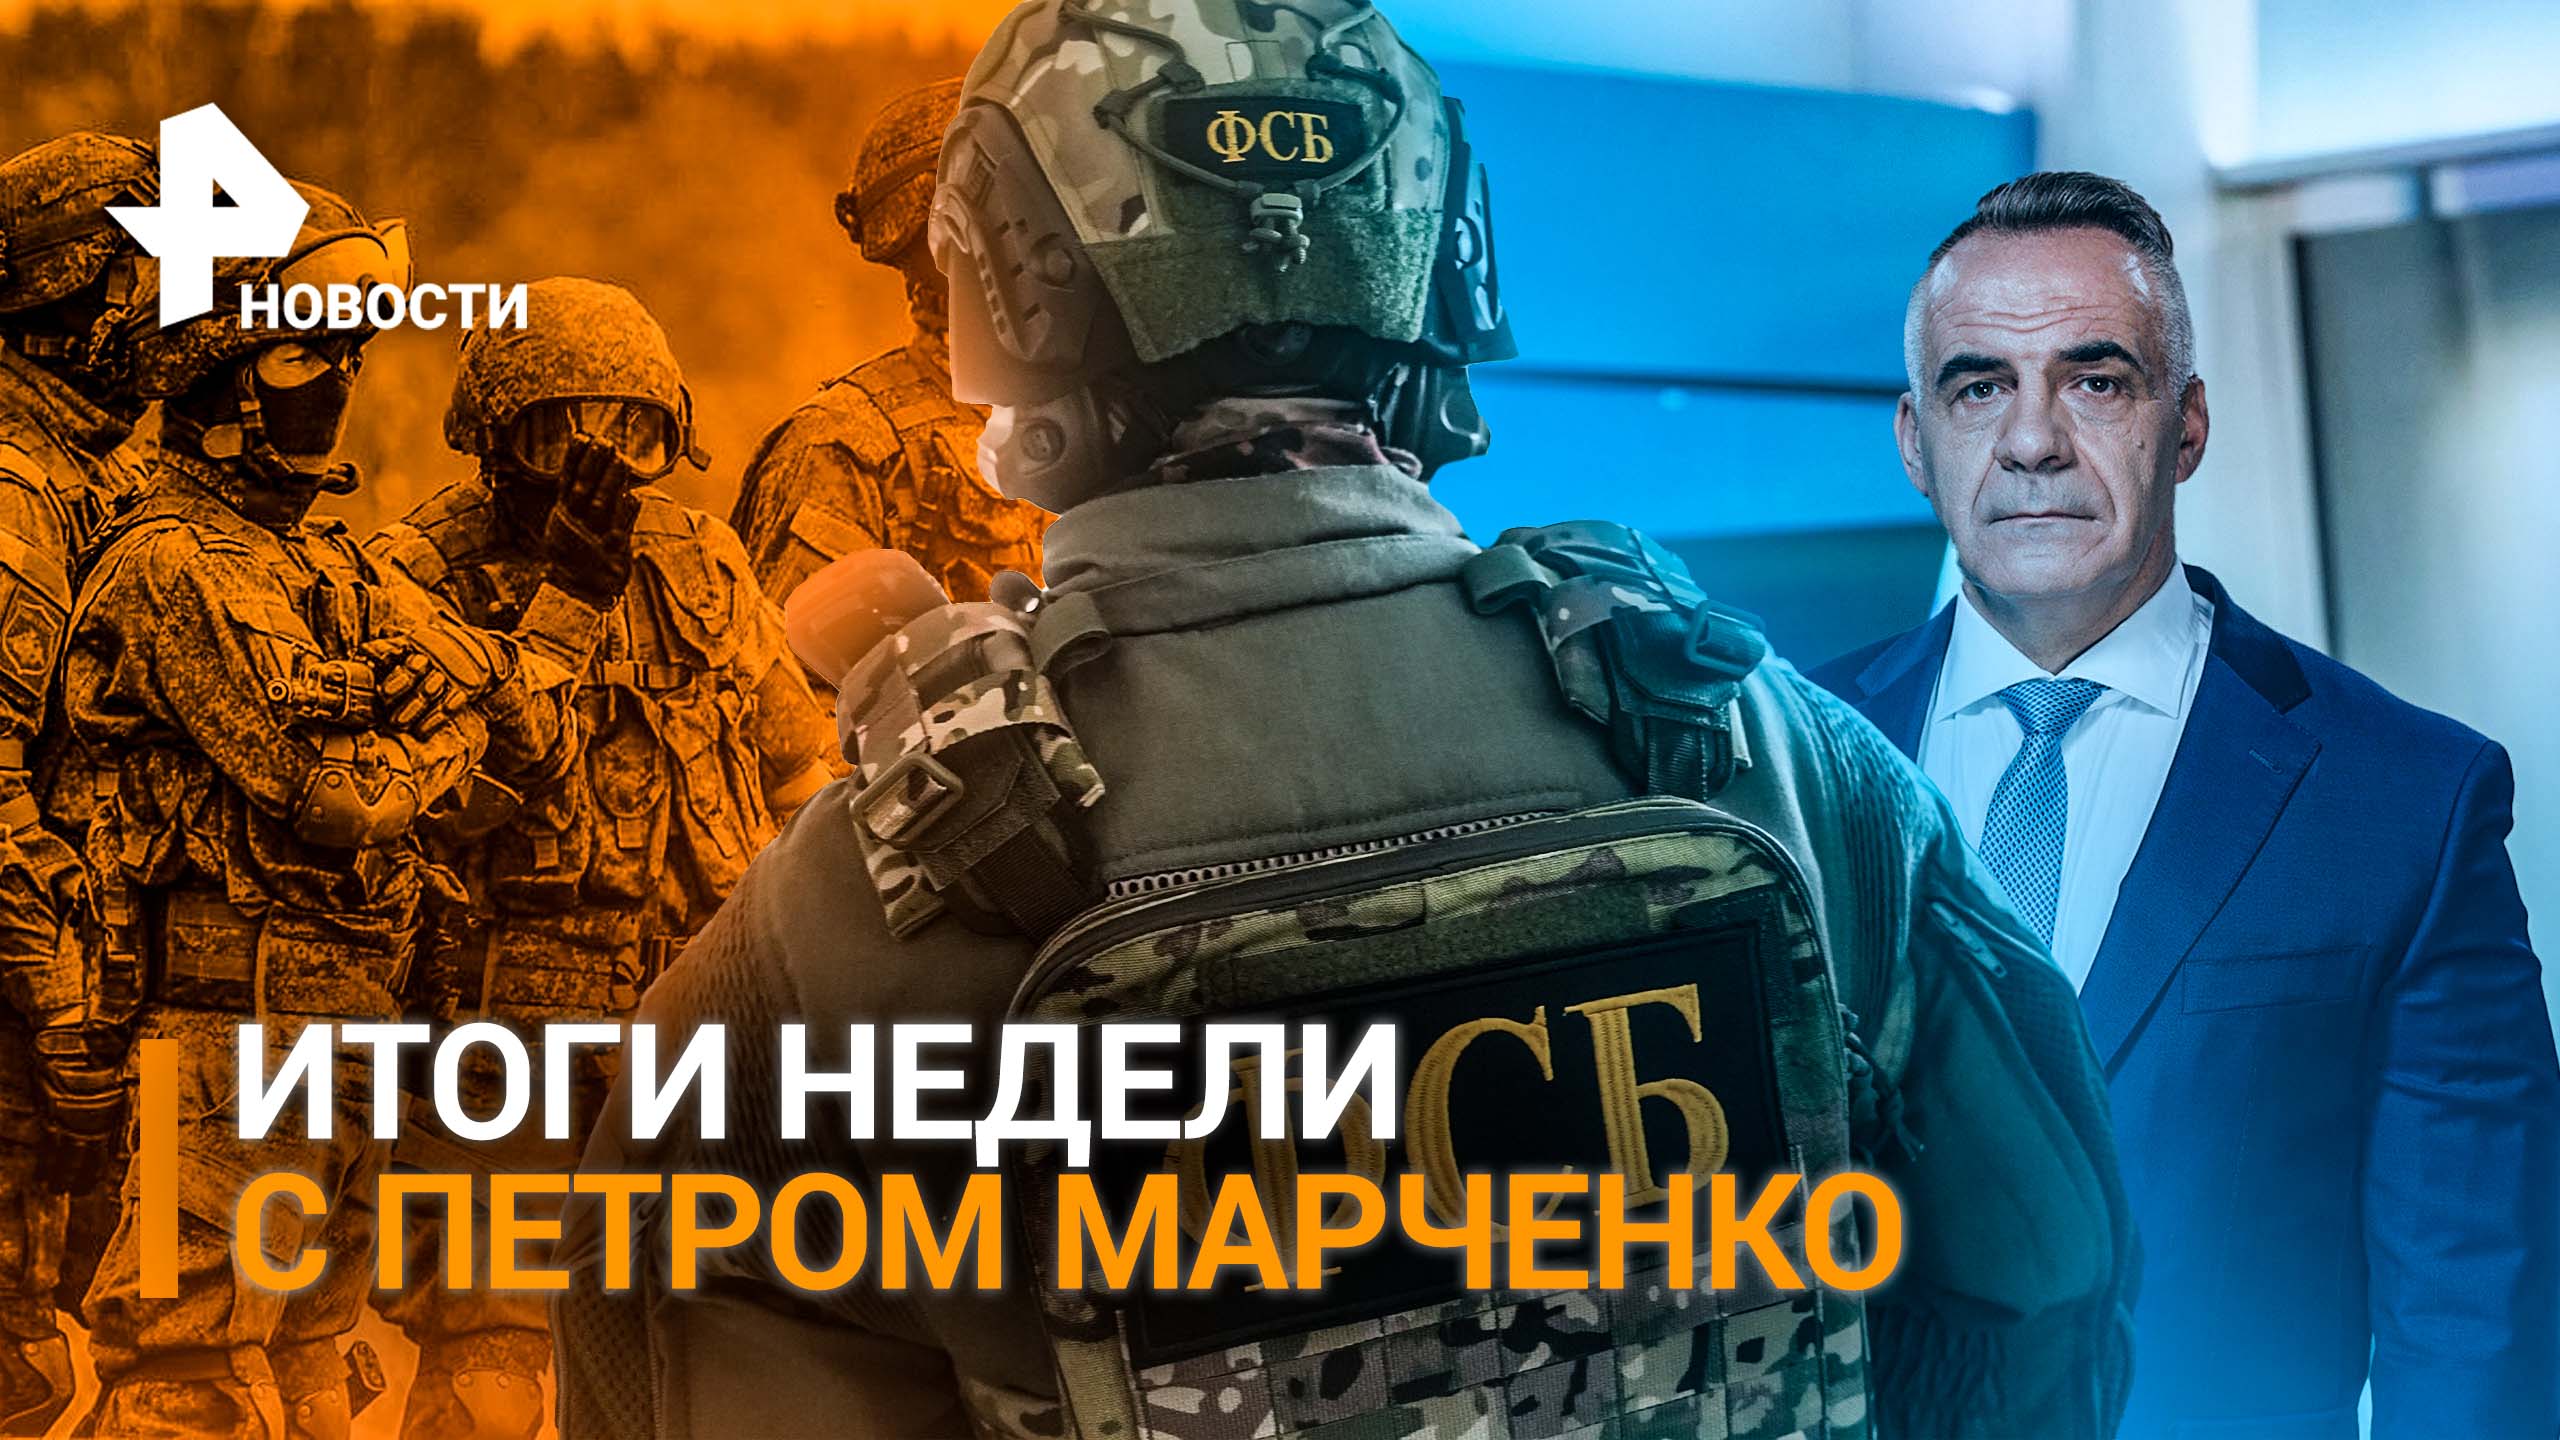 ИТОГИ НЕДЕЛИ с Петром Марченко: Кто шантажирует нашу страну и толкает мир к ядерной войне?